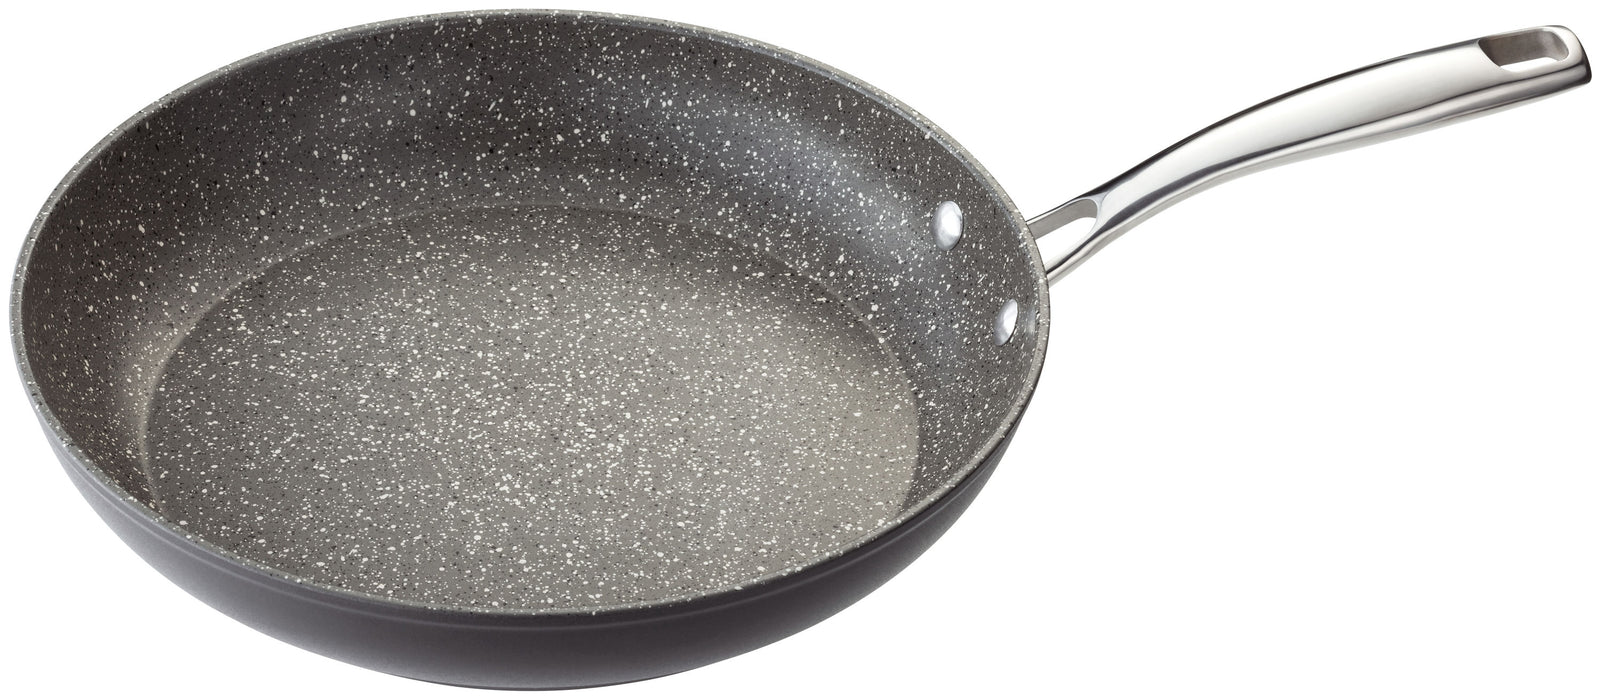 Stellar Rocktanium Frying Pan